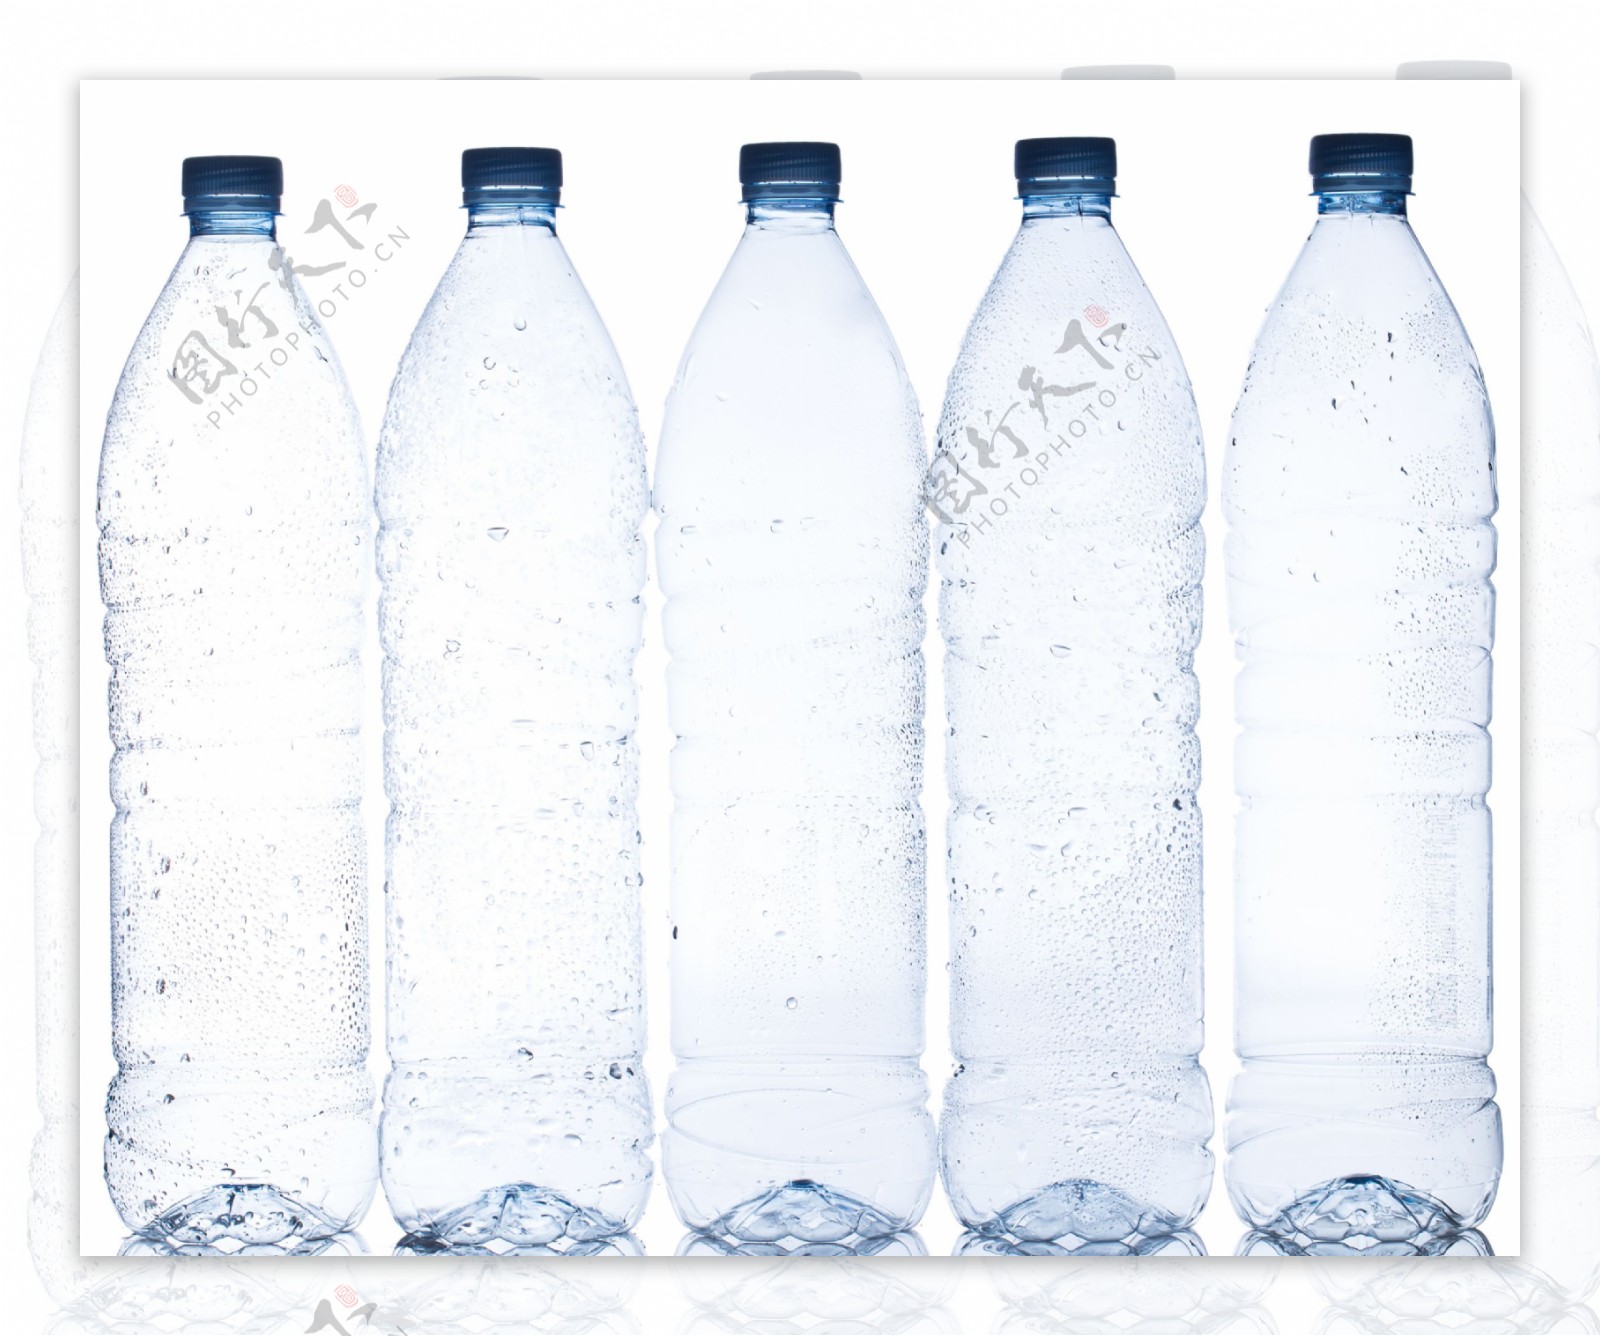 塑料水杯便携汽水瓶 印尼热销款彩色光面密封水杯子塑料水瓶-阿里巴巴